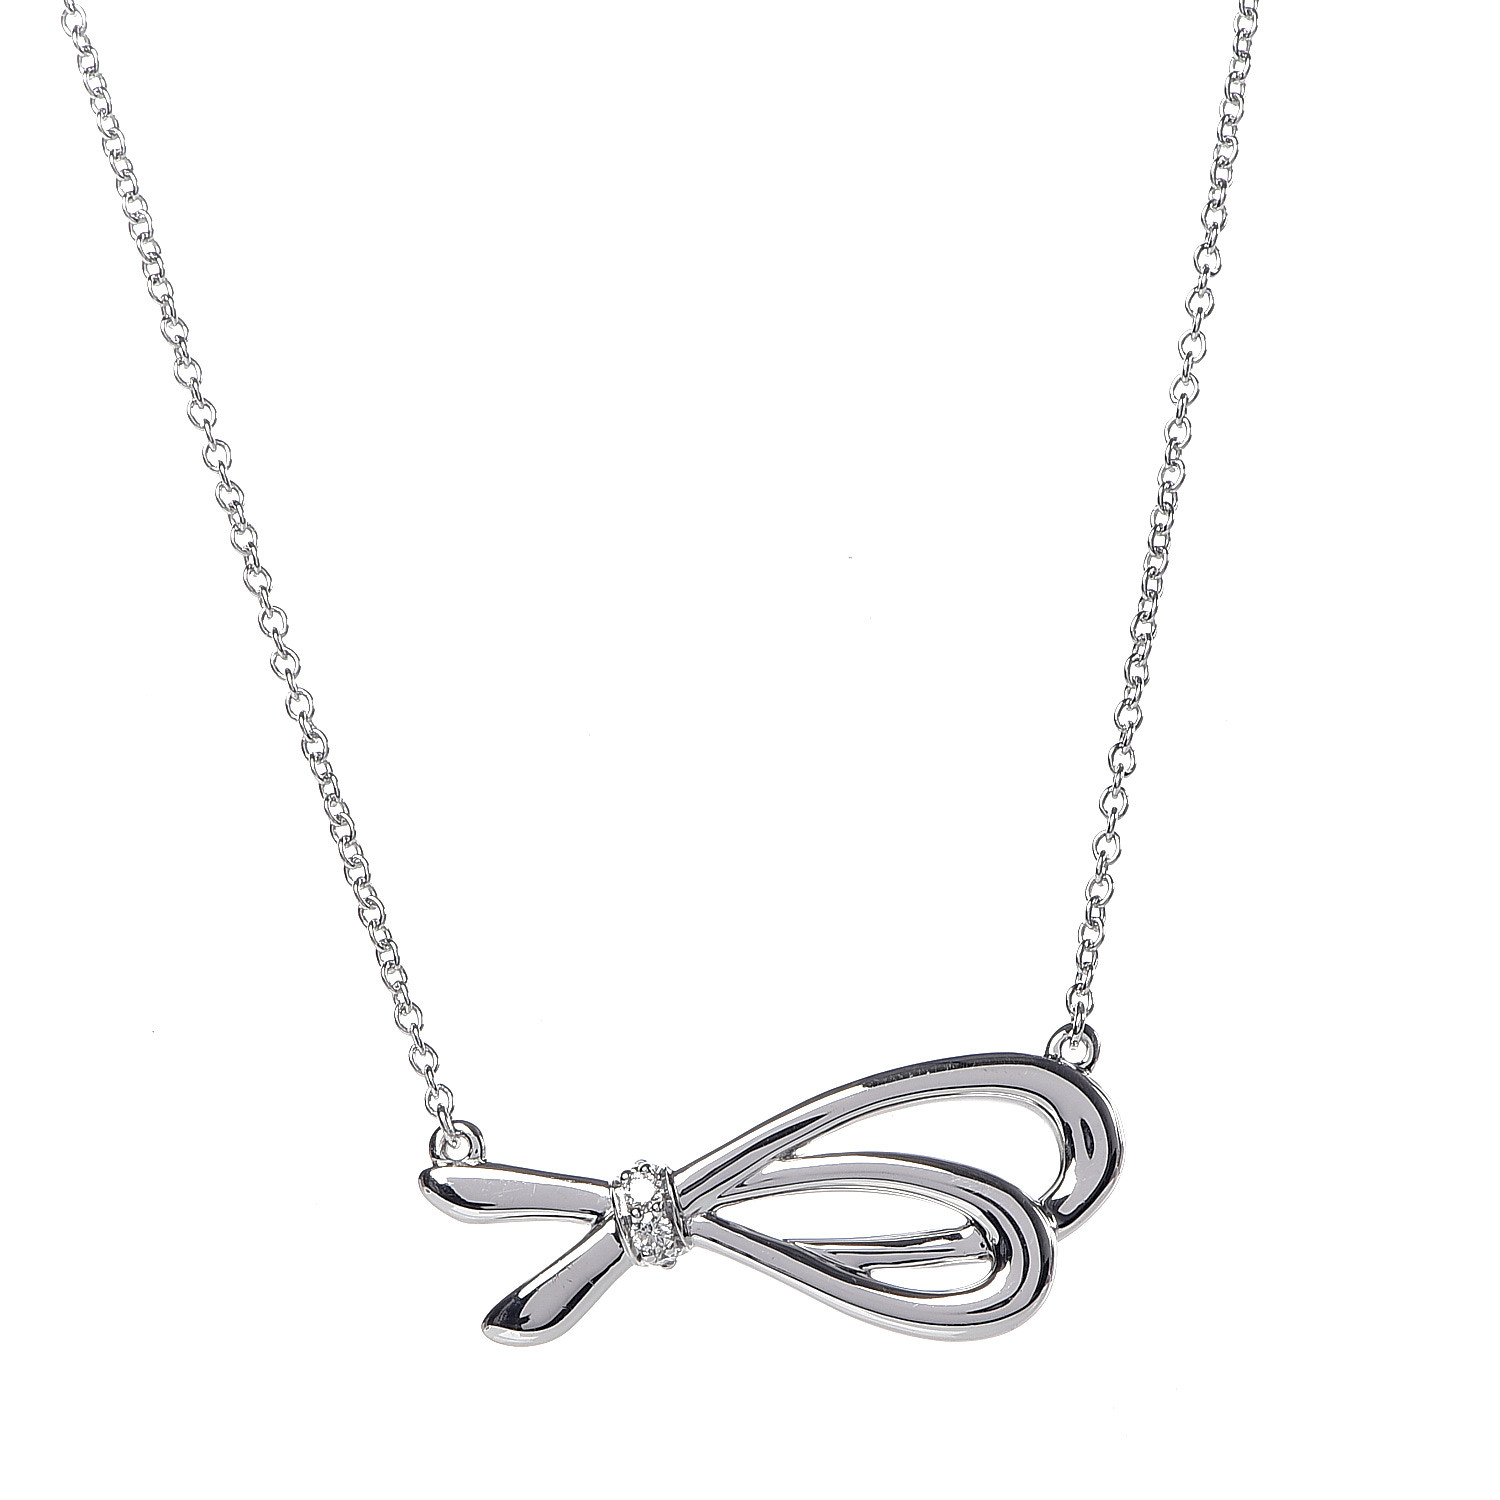 tiffany bow necklace uk